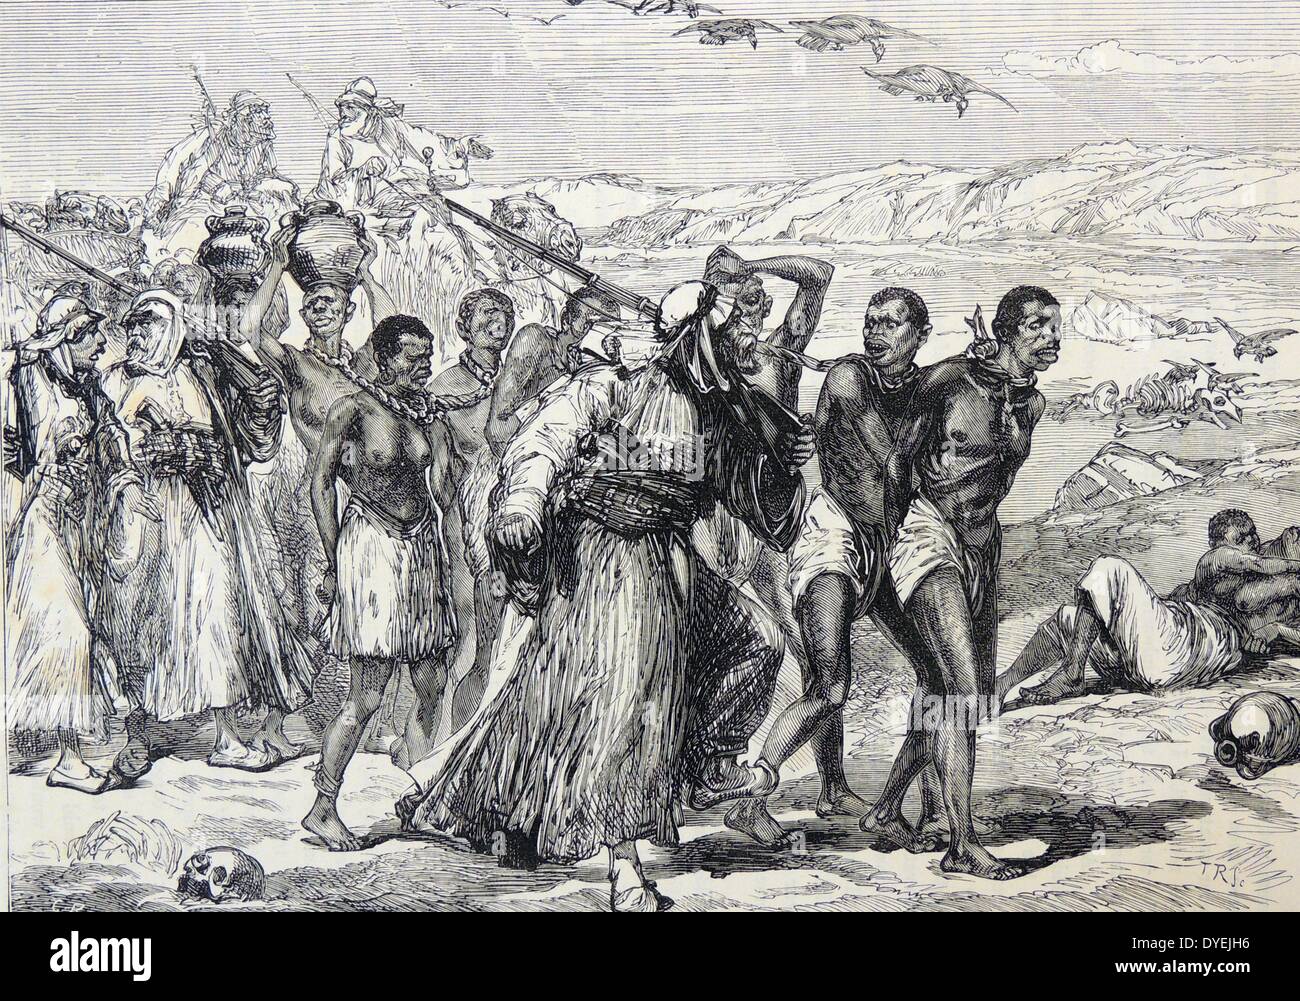 Ein Sklave Karawane Reisen aus dem Inneren Afrikas an der Küste von Marokko für Verkauf und Transport Abbildung veröffentlicht London, 1880. Stockfoto